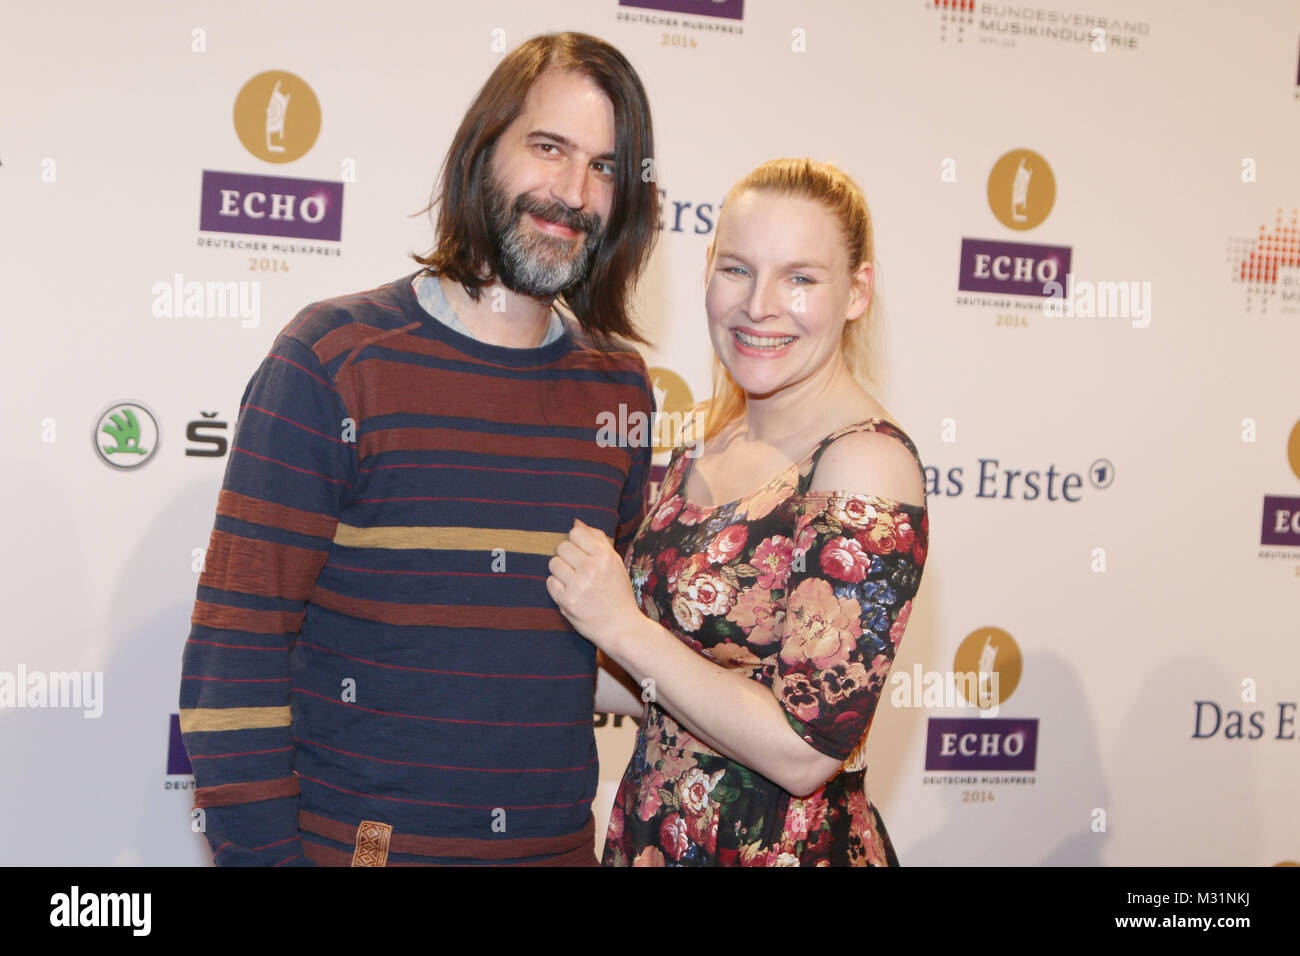 Judith Oloferne mit Mann Sebastian Roy, Echo 2014 in der Messe Berlin, Berlin, 27.03.2014 Foto Stock